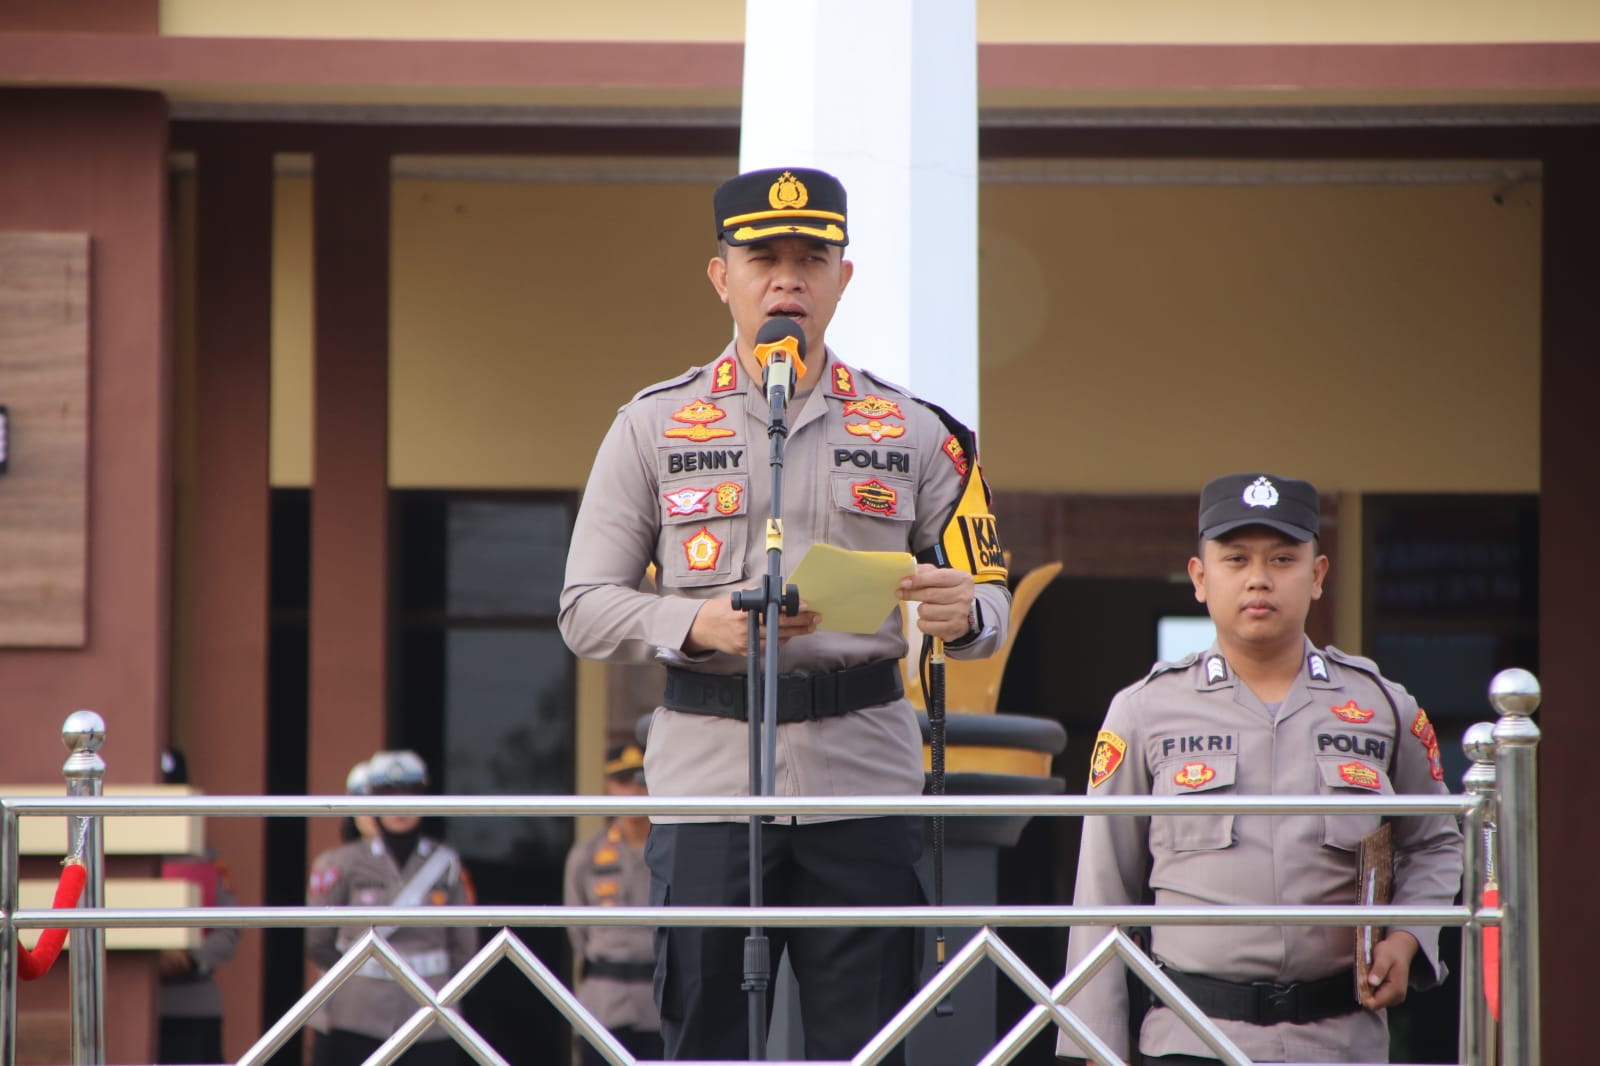 Disersi Sebulan Lebih, Personel Polres Pringsewu Di-PTDH saat Upacara Peringatan Hari Kesadaran Nasional